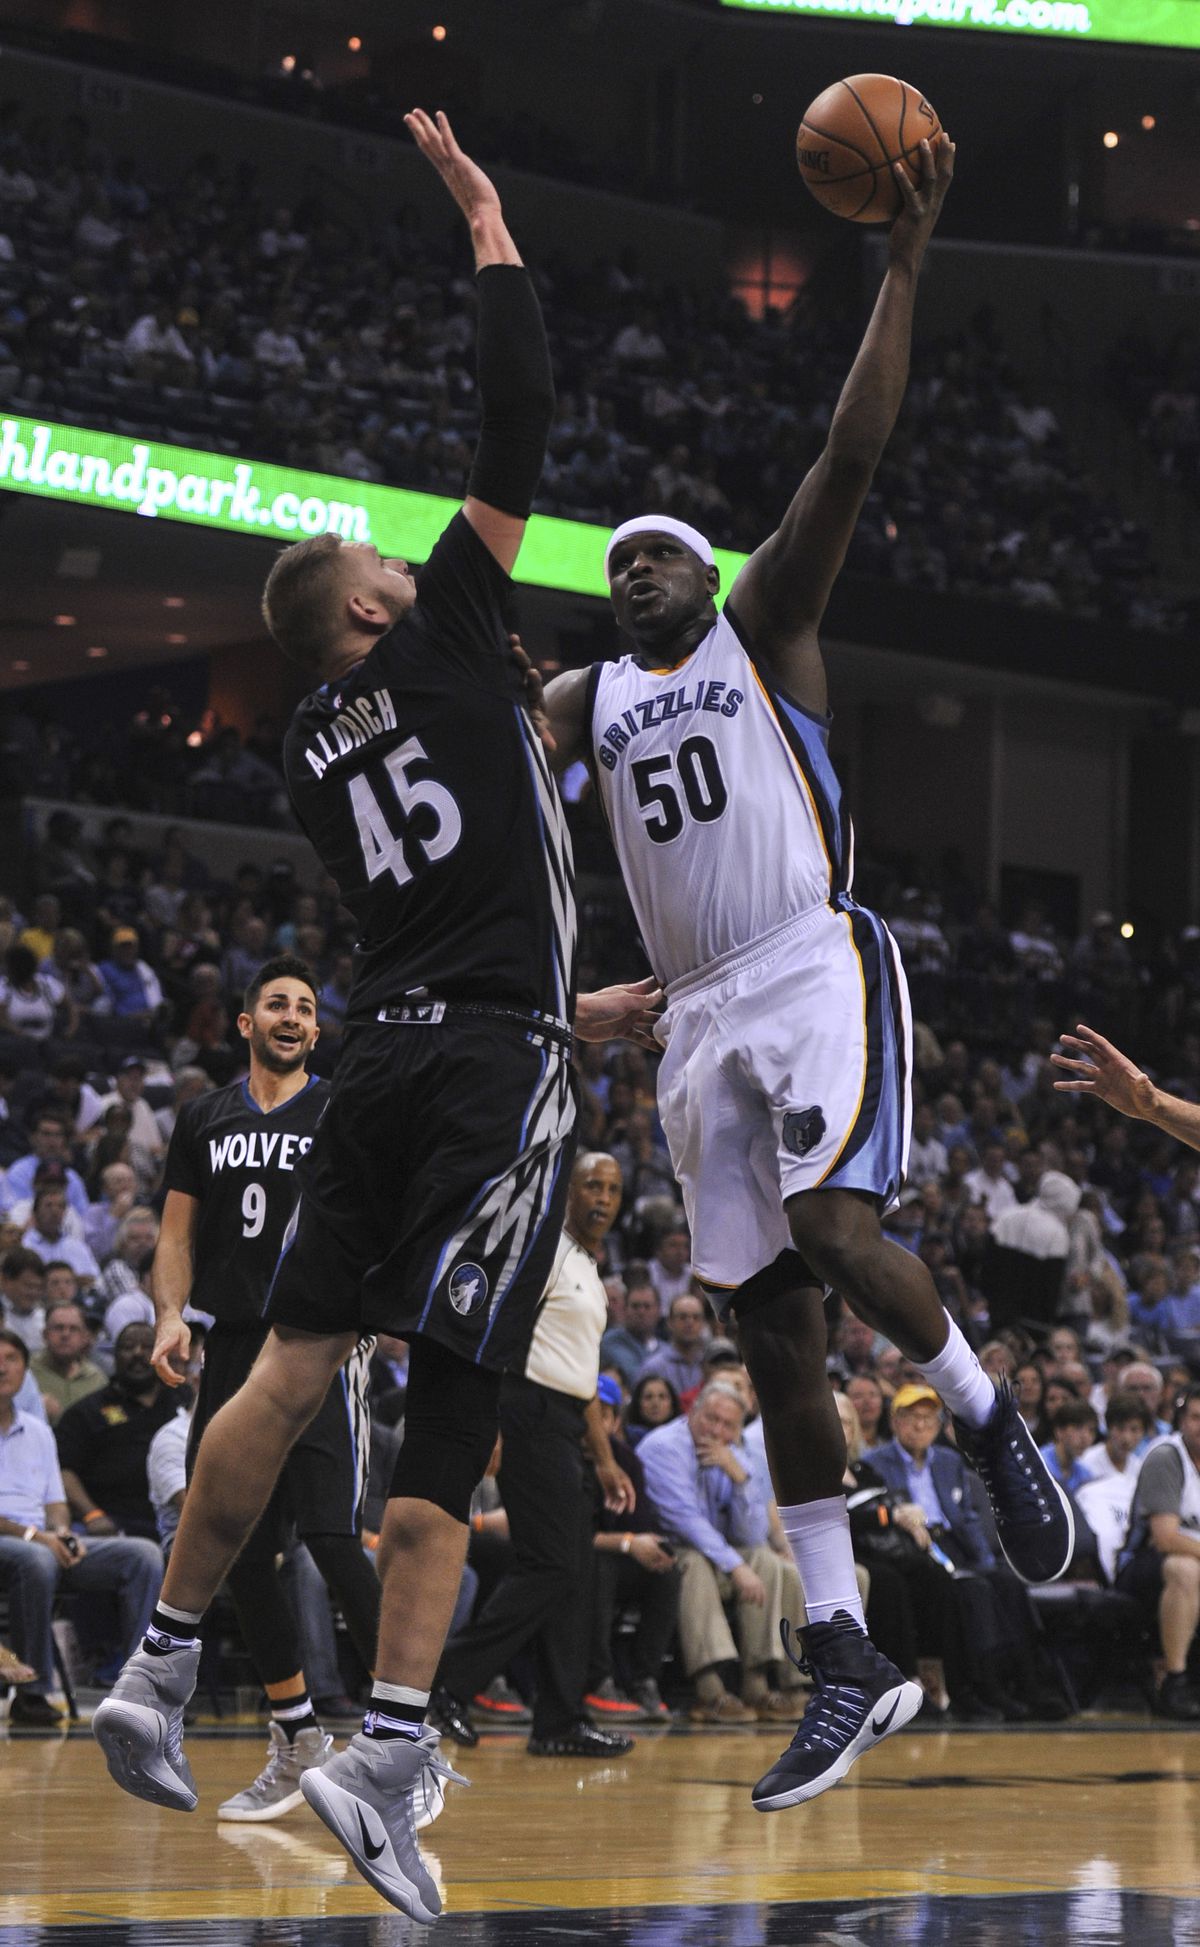 NBA: Minnesota Timberwolves at Memphis Grizzlies